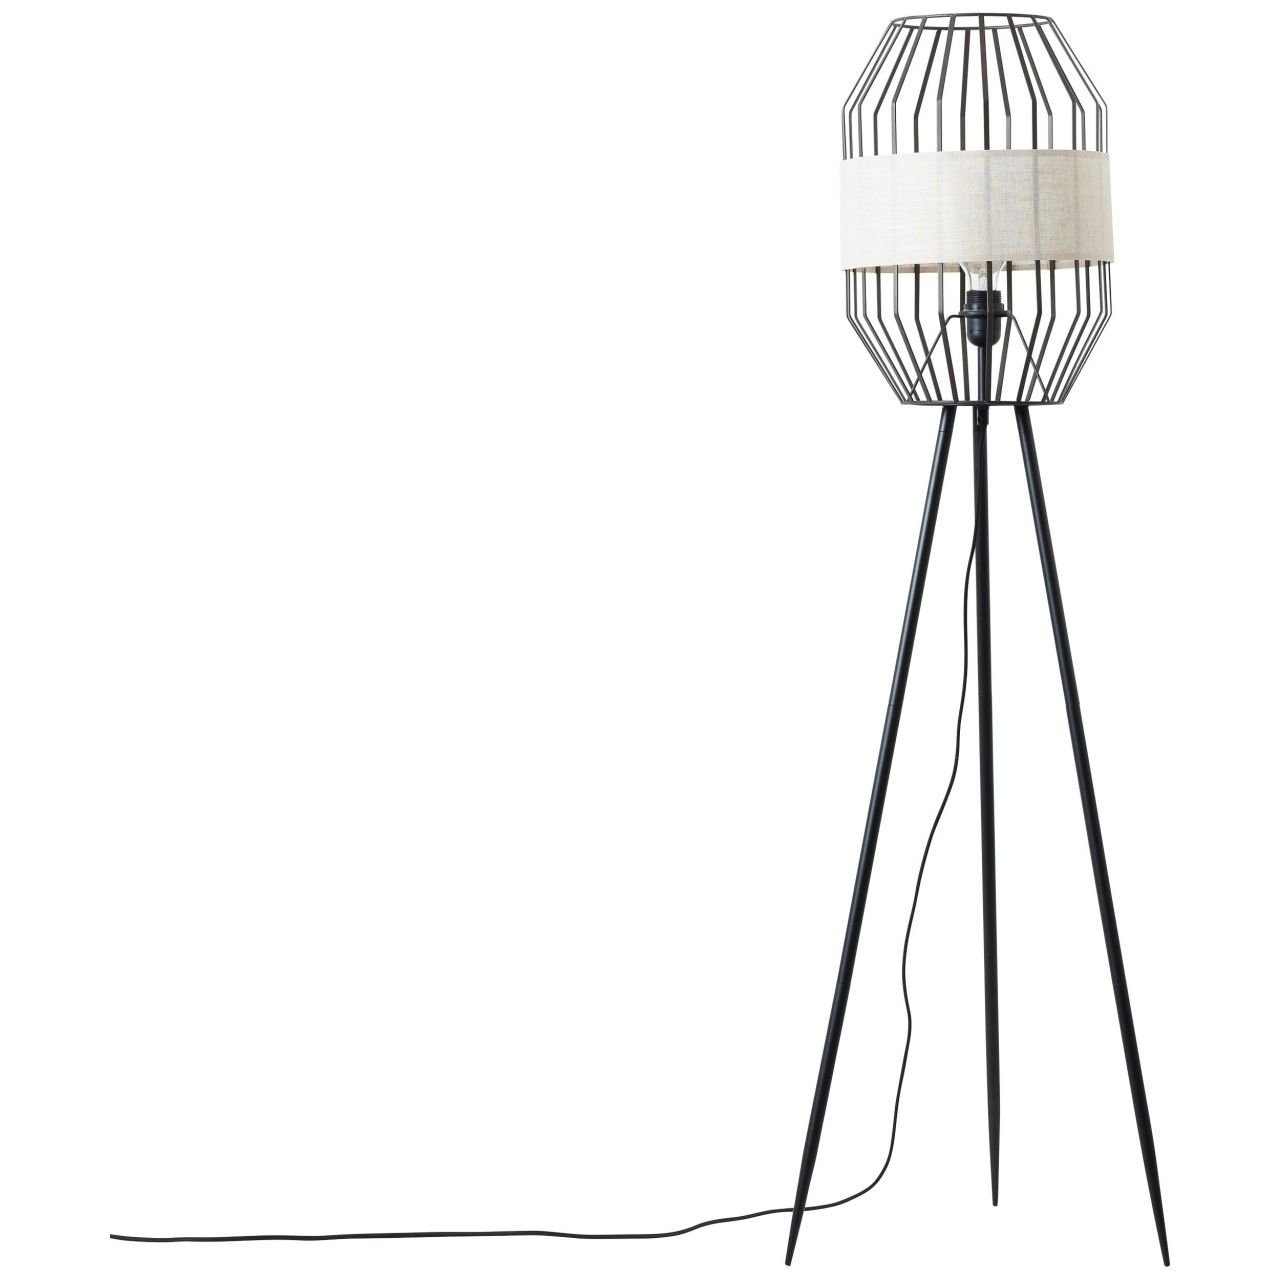 Brilliant Stehlampe Slope, 40W schwarz/natur, Slope 1x Standleuchte Lampe, dreibeinig E27, A60